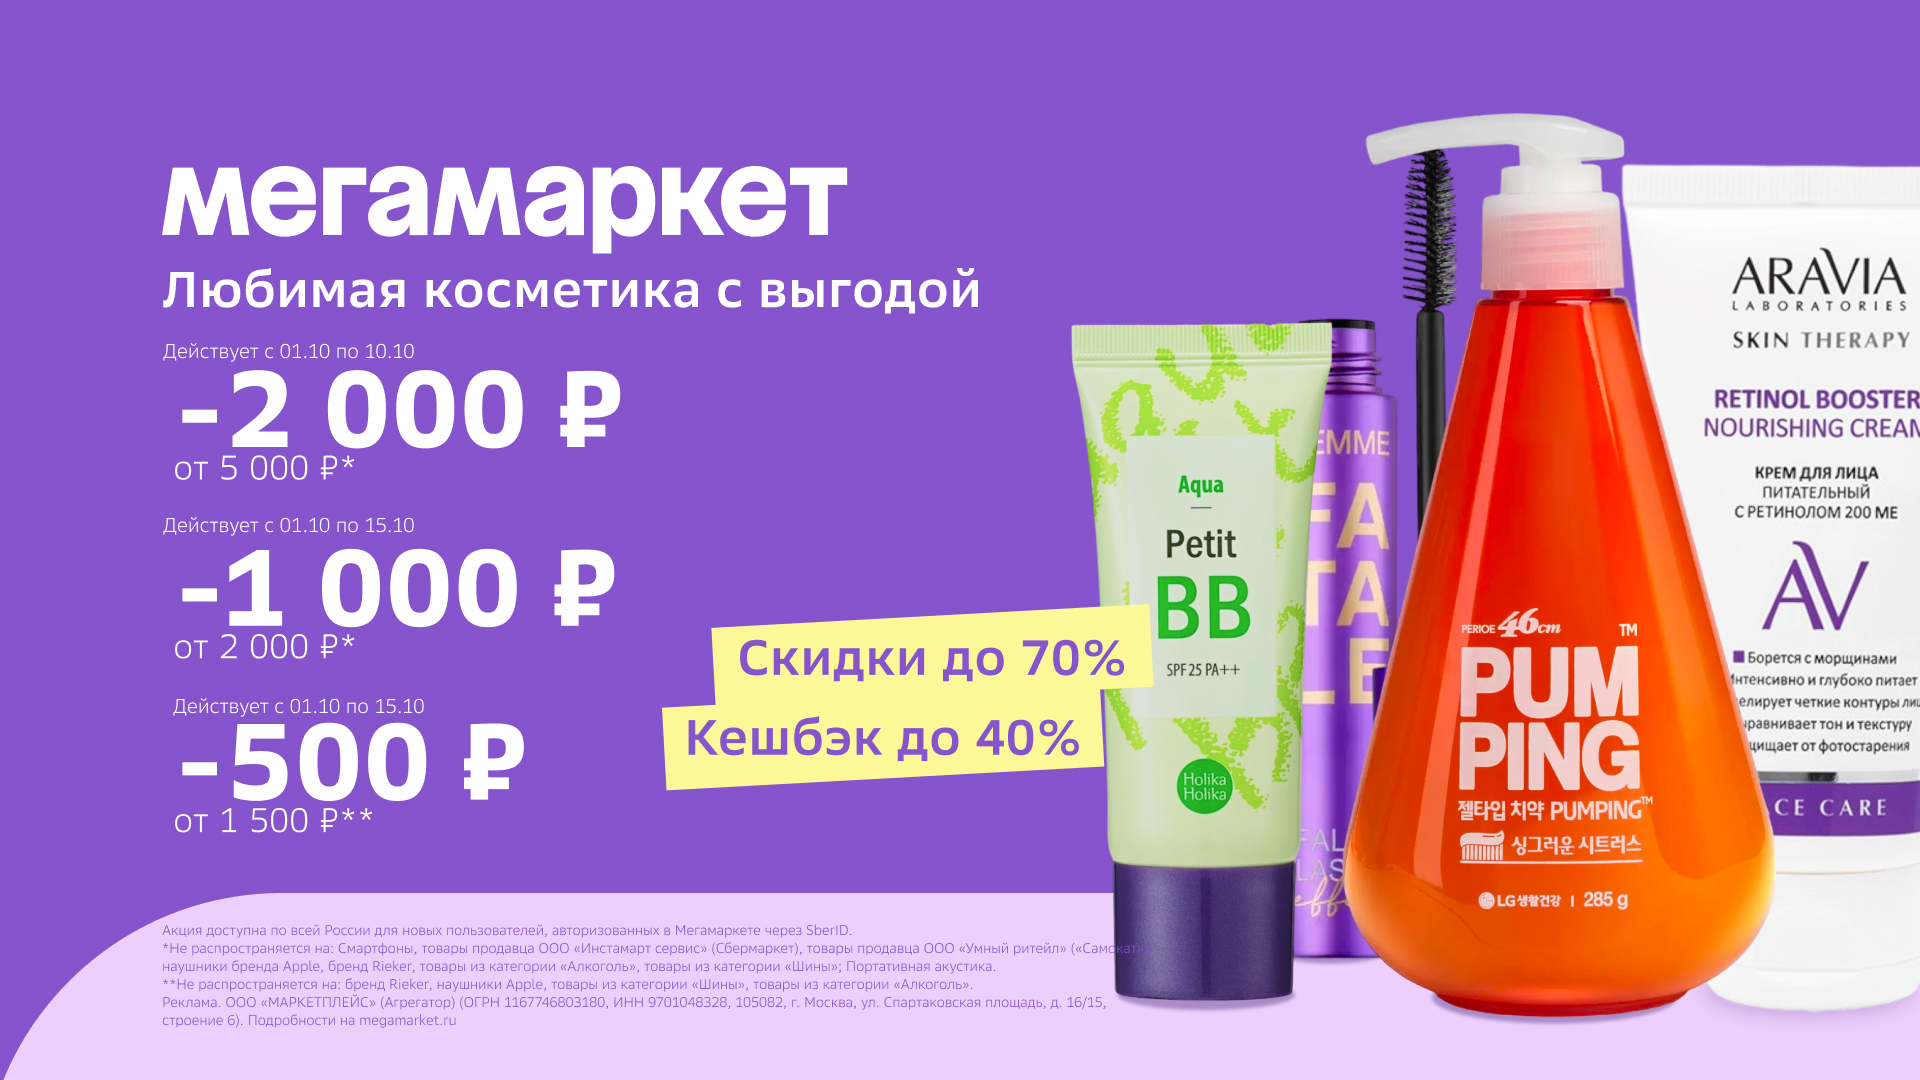 Промокод Мегамаркет – скидка 500 руб. от 1500 руб. для новых пользователей!